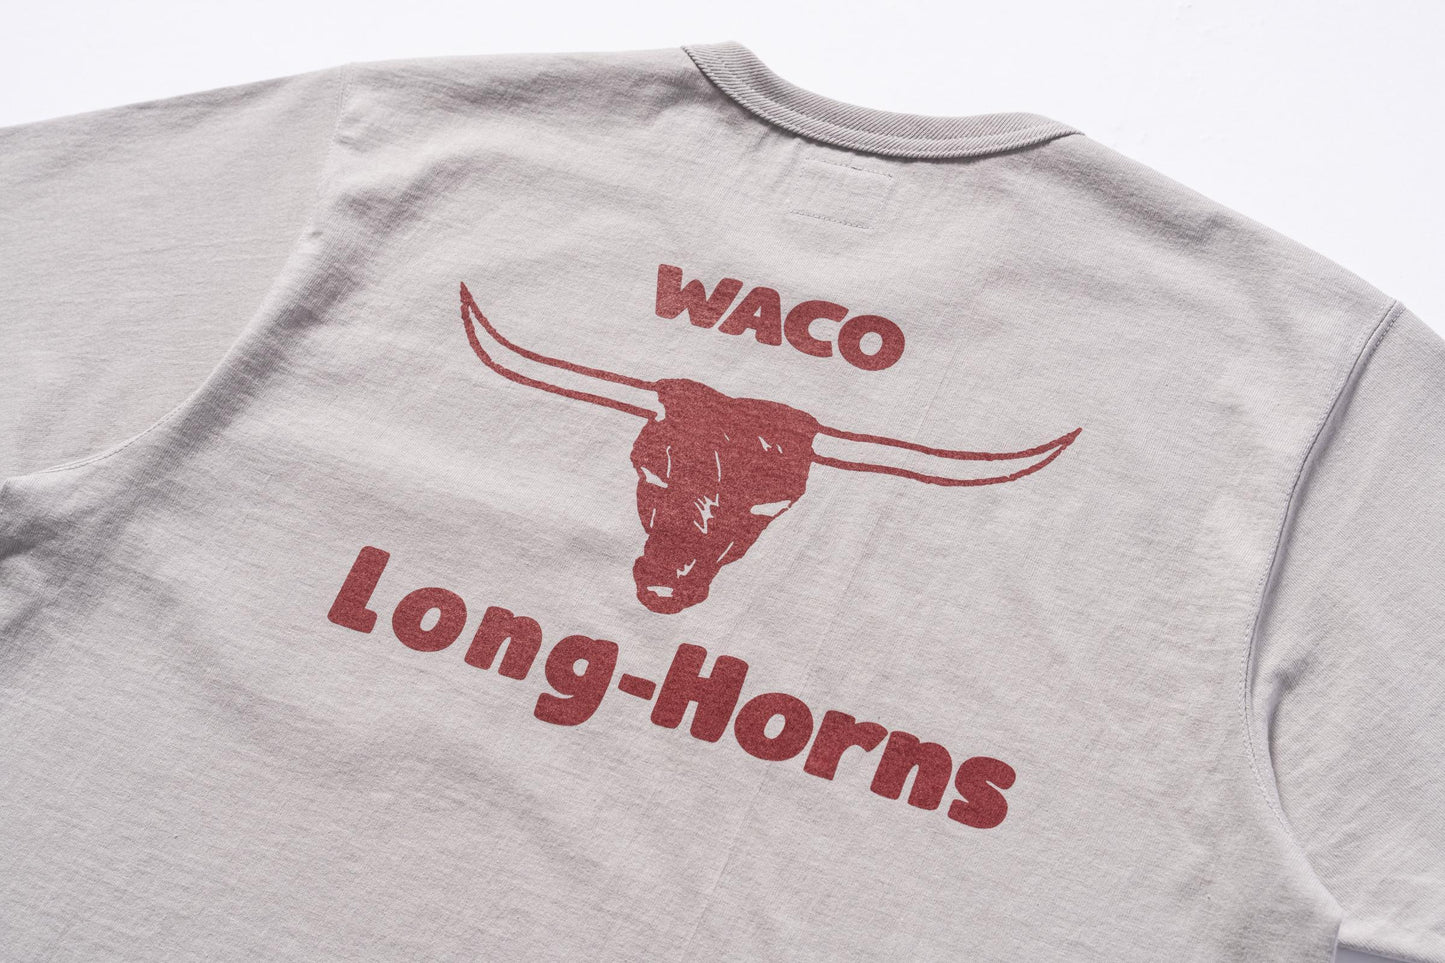 JOE MCCOY TEE / WACO LONG-HORNS